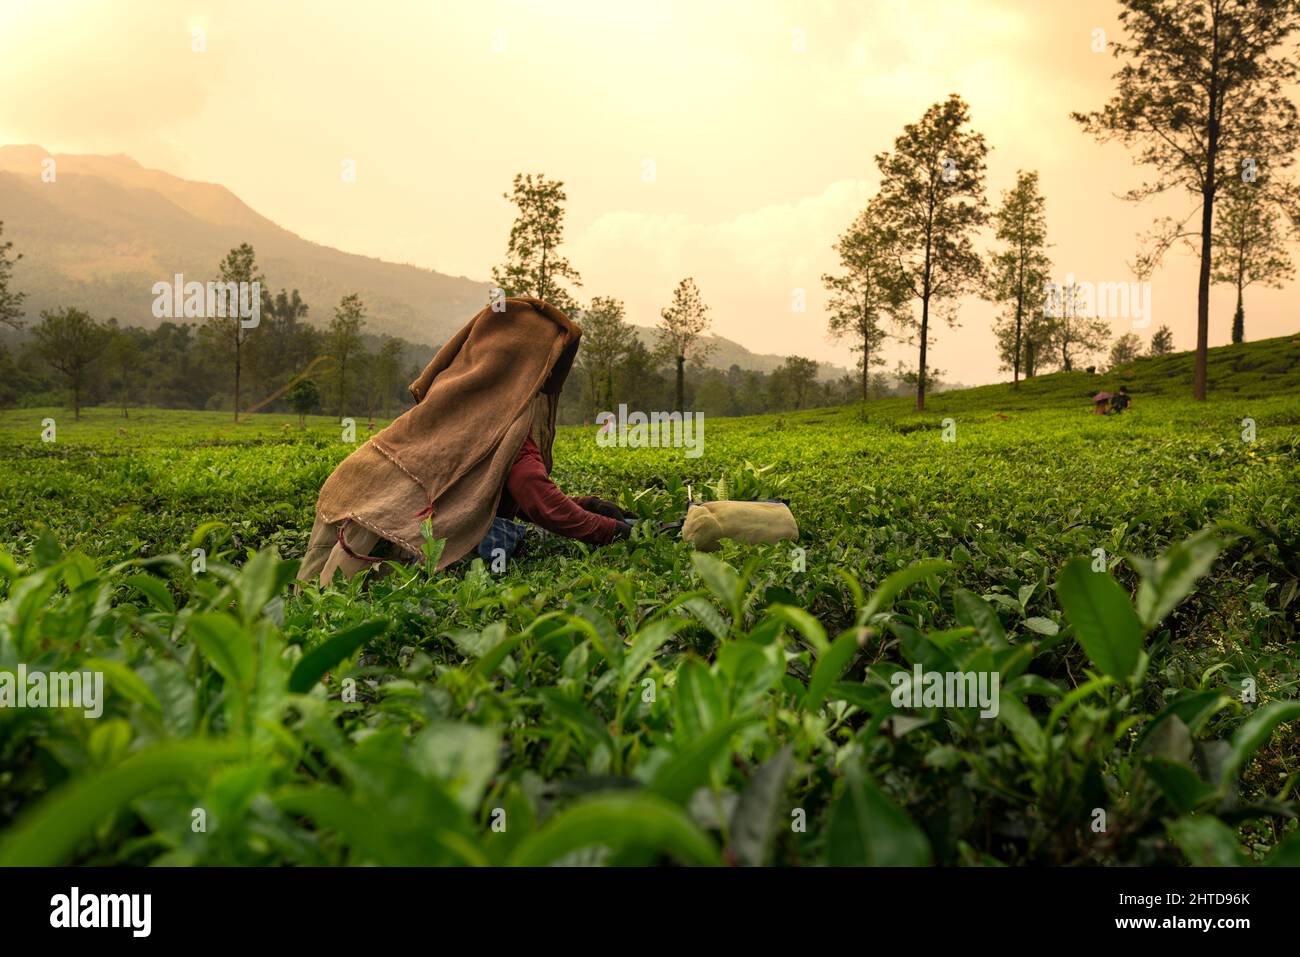 Arbeiter pflücken Teeblätter in Teeplantage, schöne Morgenansicht von Wayanad, Kerala Natur Landschaft, International Tea Day Konzept Bild Stockfoto